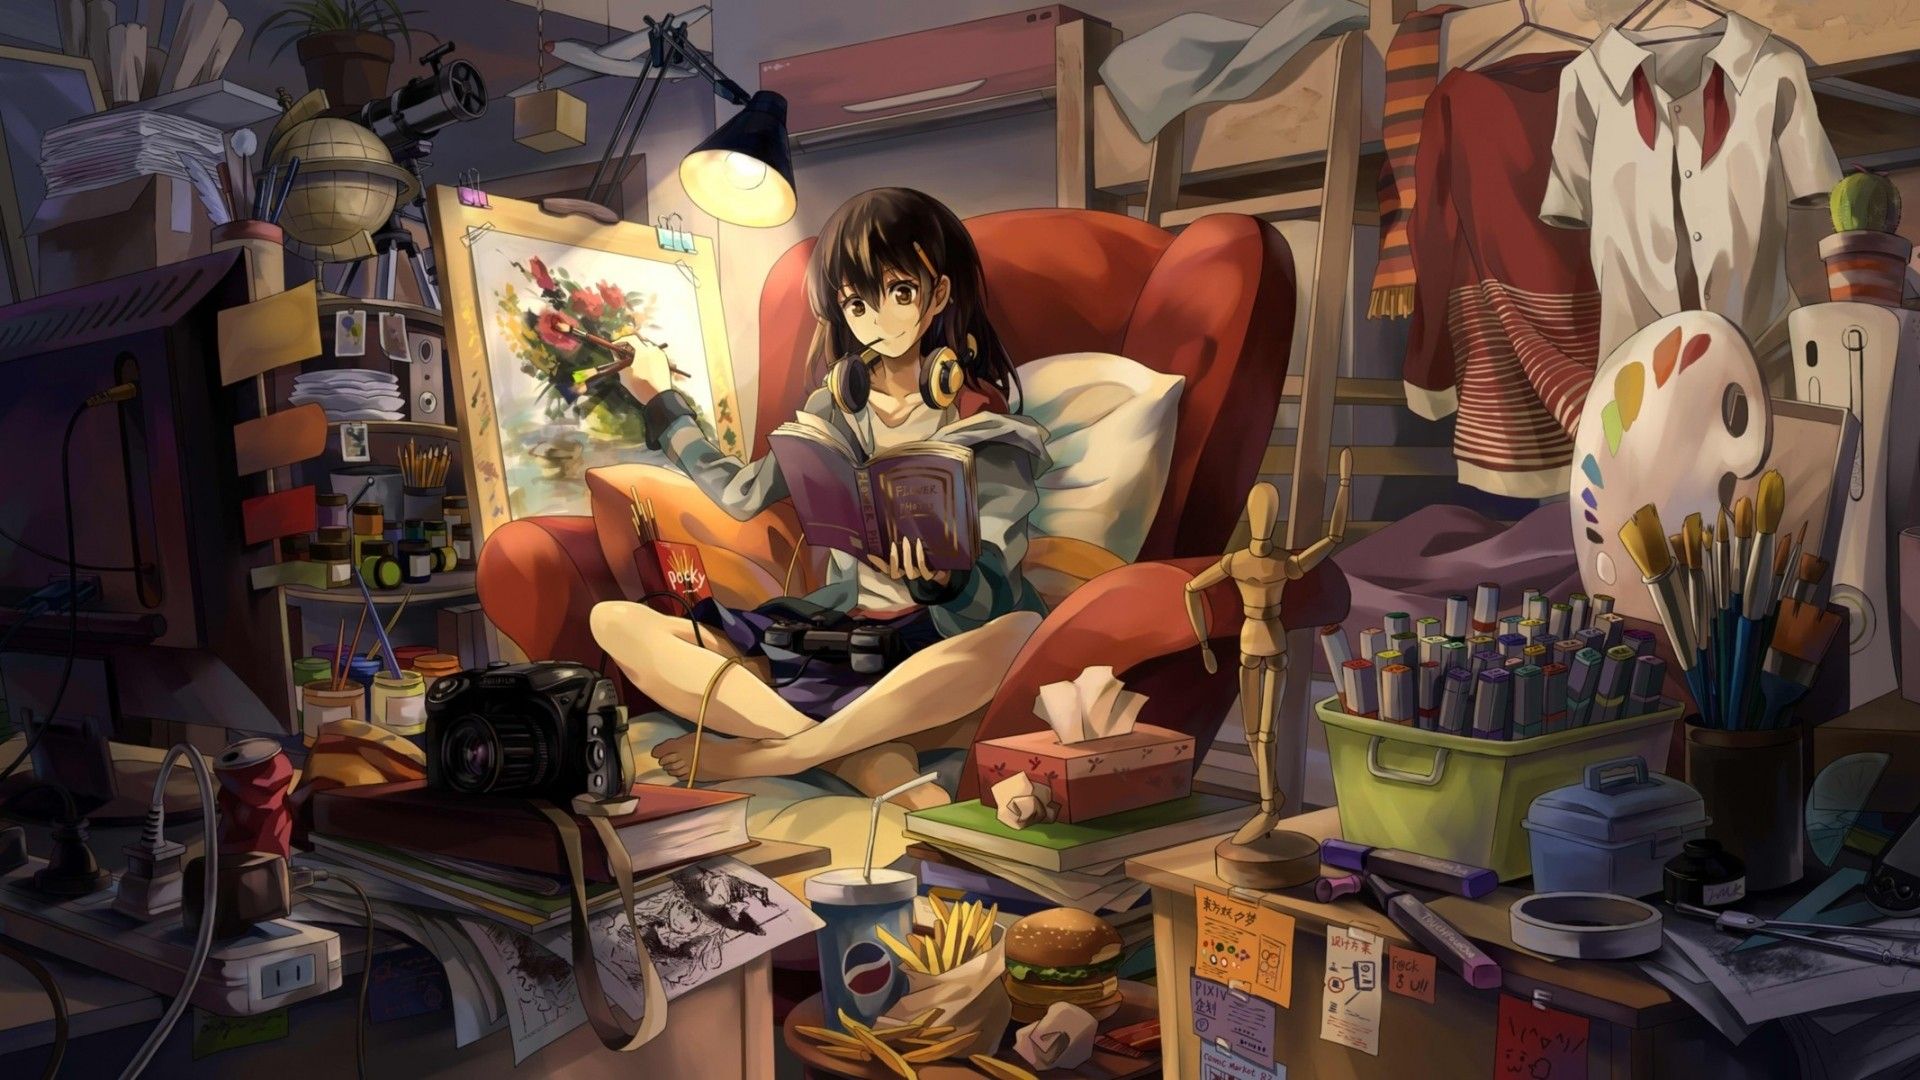 Gamer Cute Anime Wallpaper For Girls